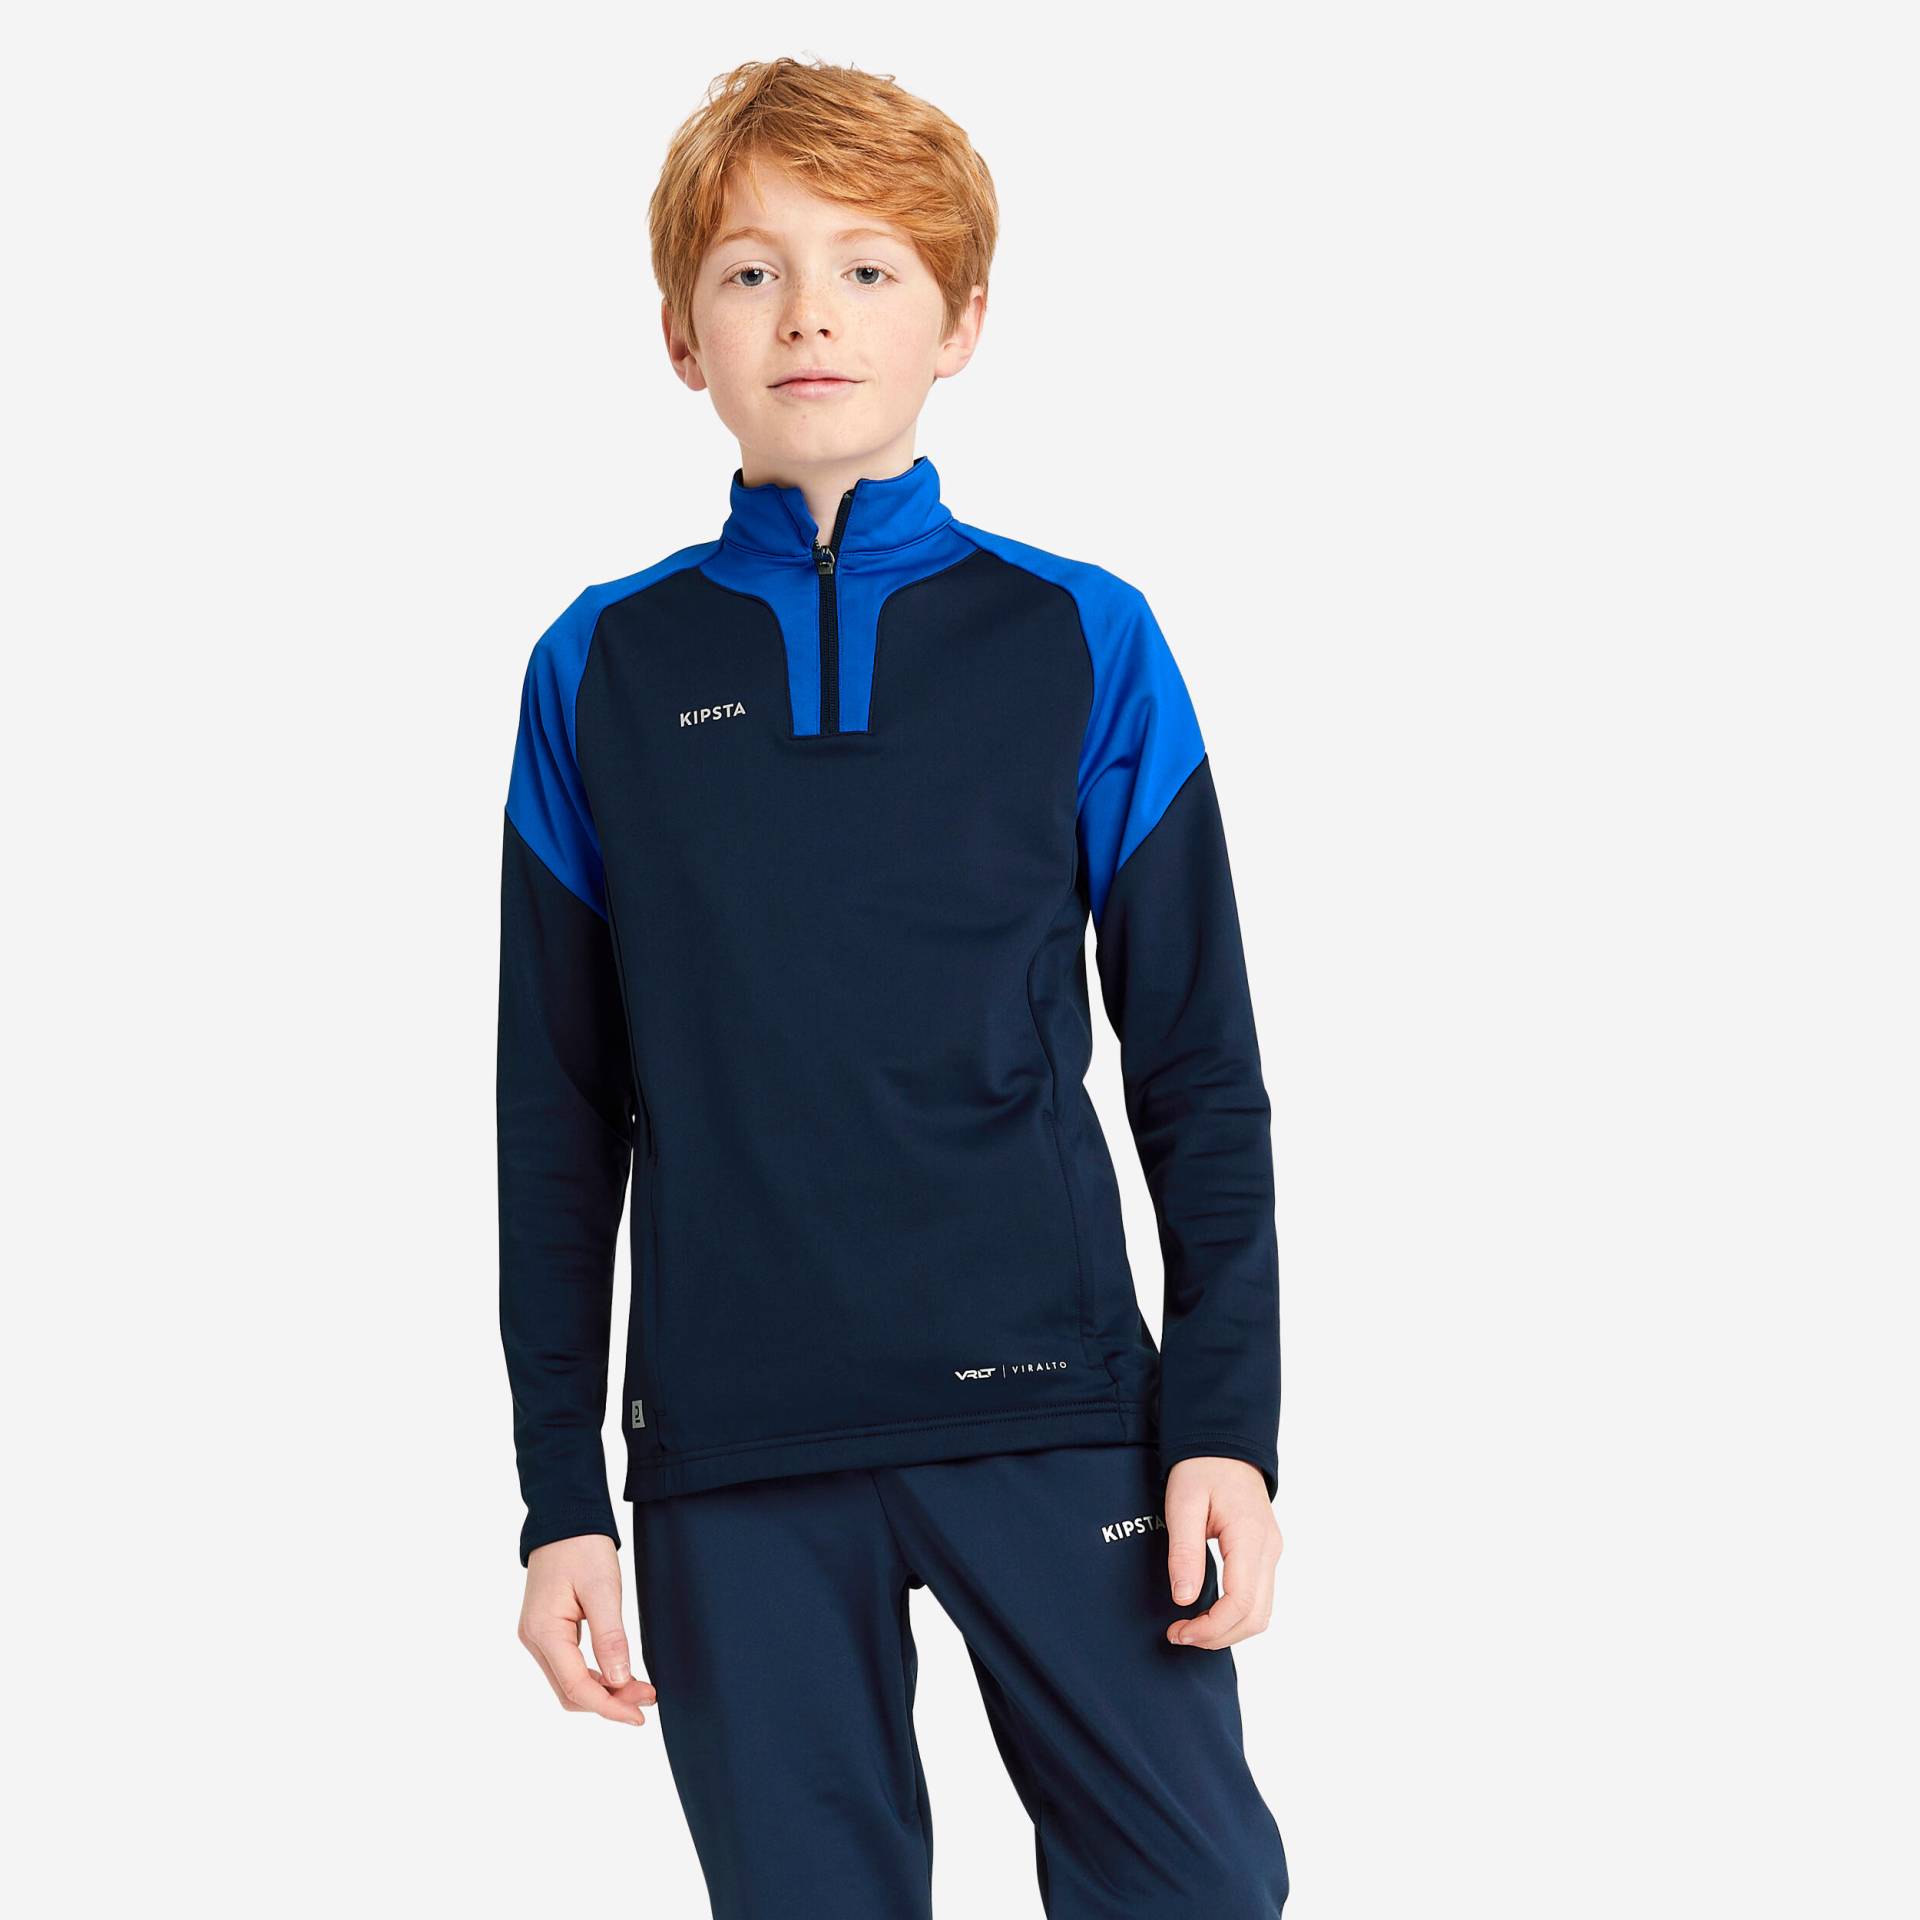 Kinder Fussball Sweatshirt mit Reissverschluss - Viralto Club marineblau/blau von KIPSTA